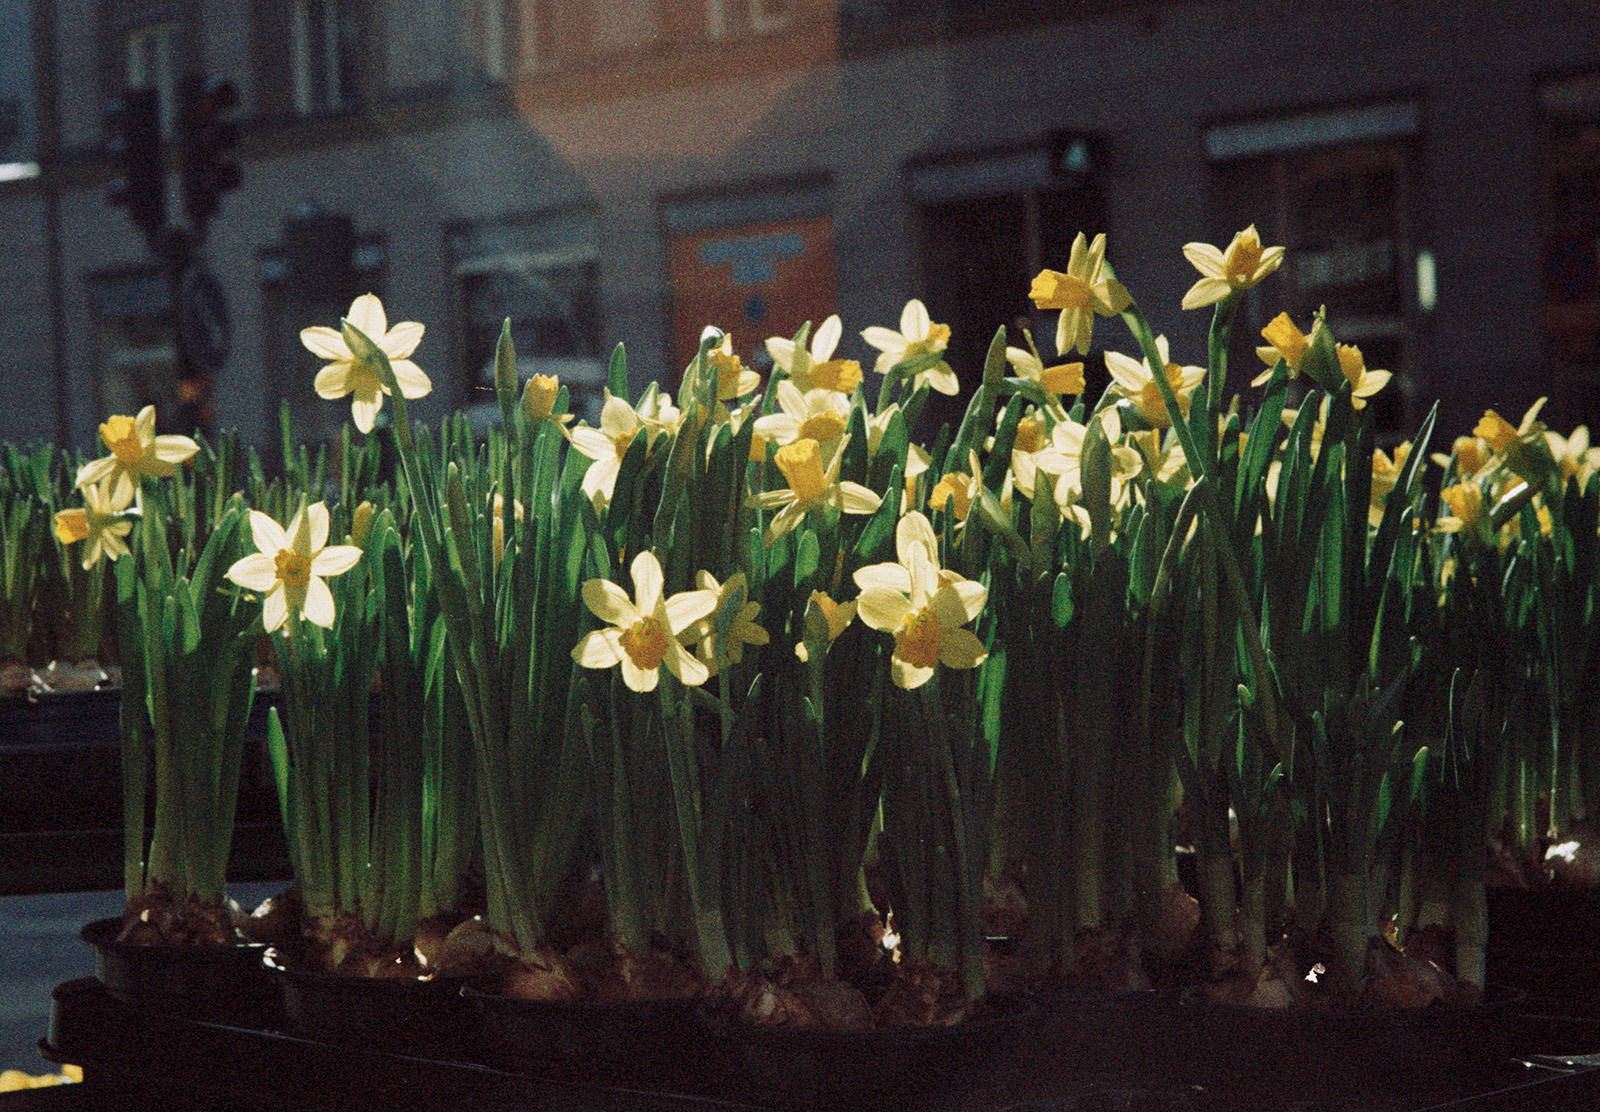 Daffodils in the sun